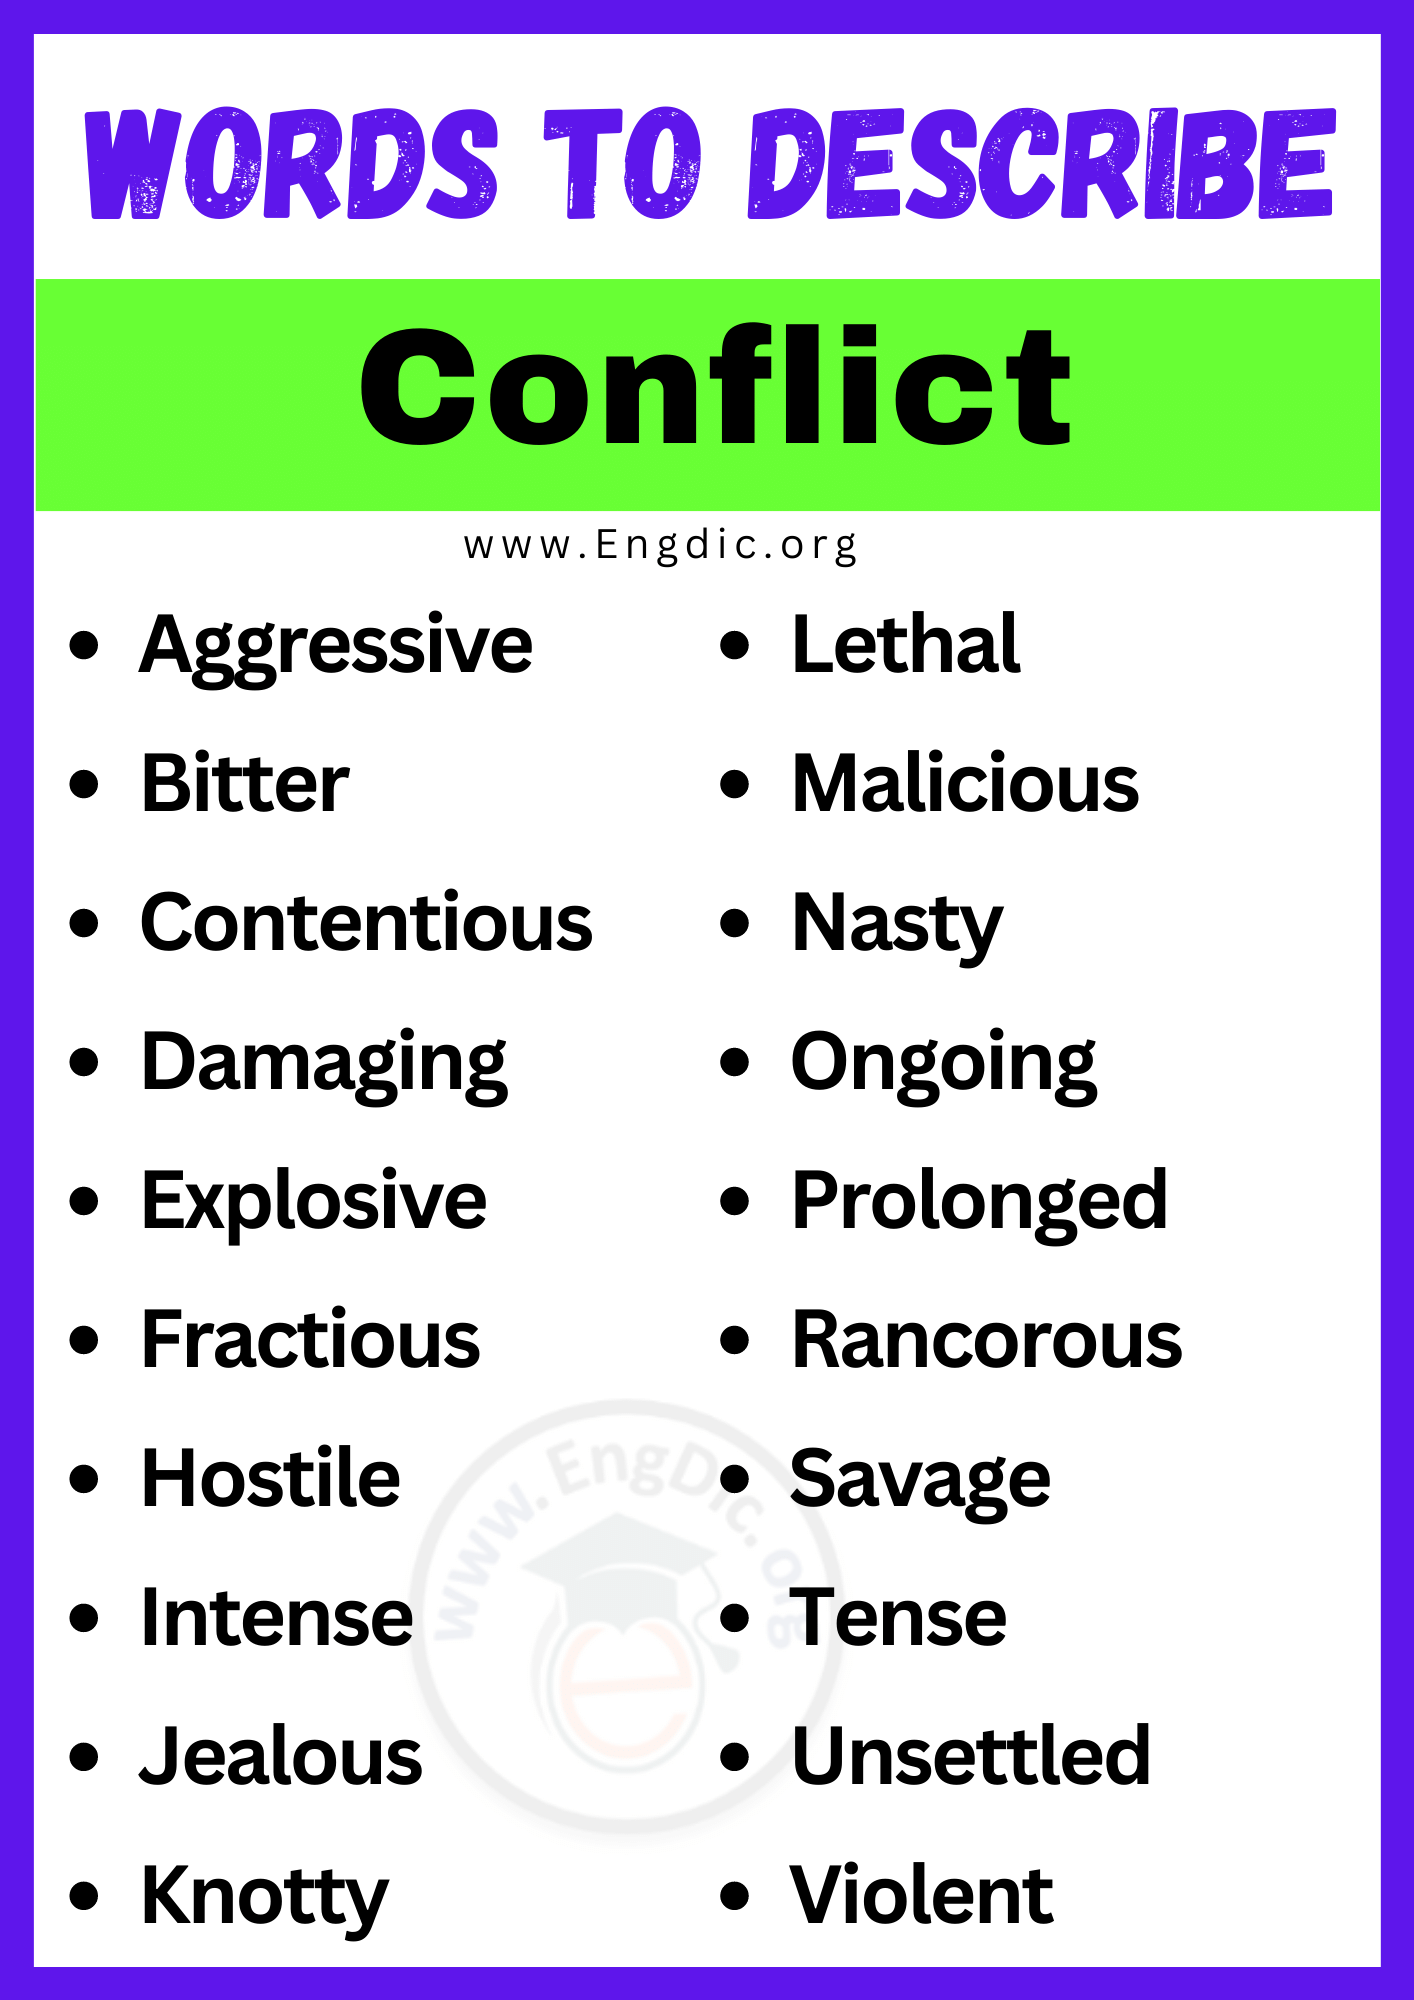 Words to Describe Conflict